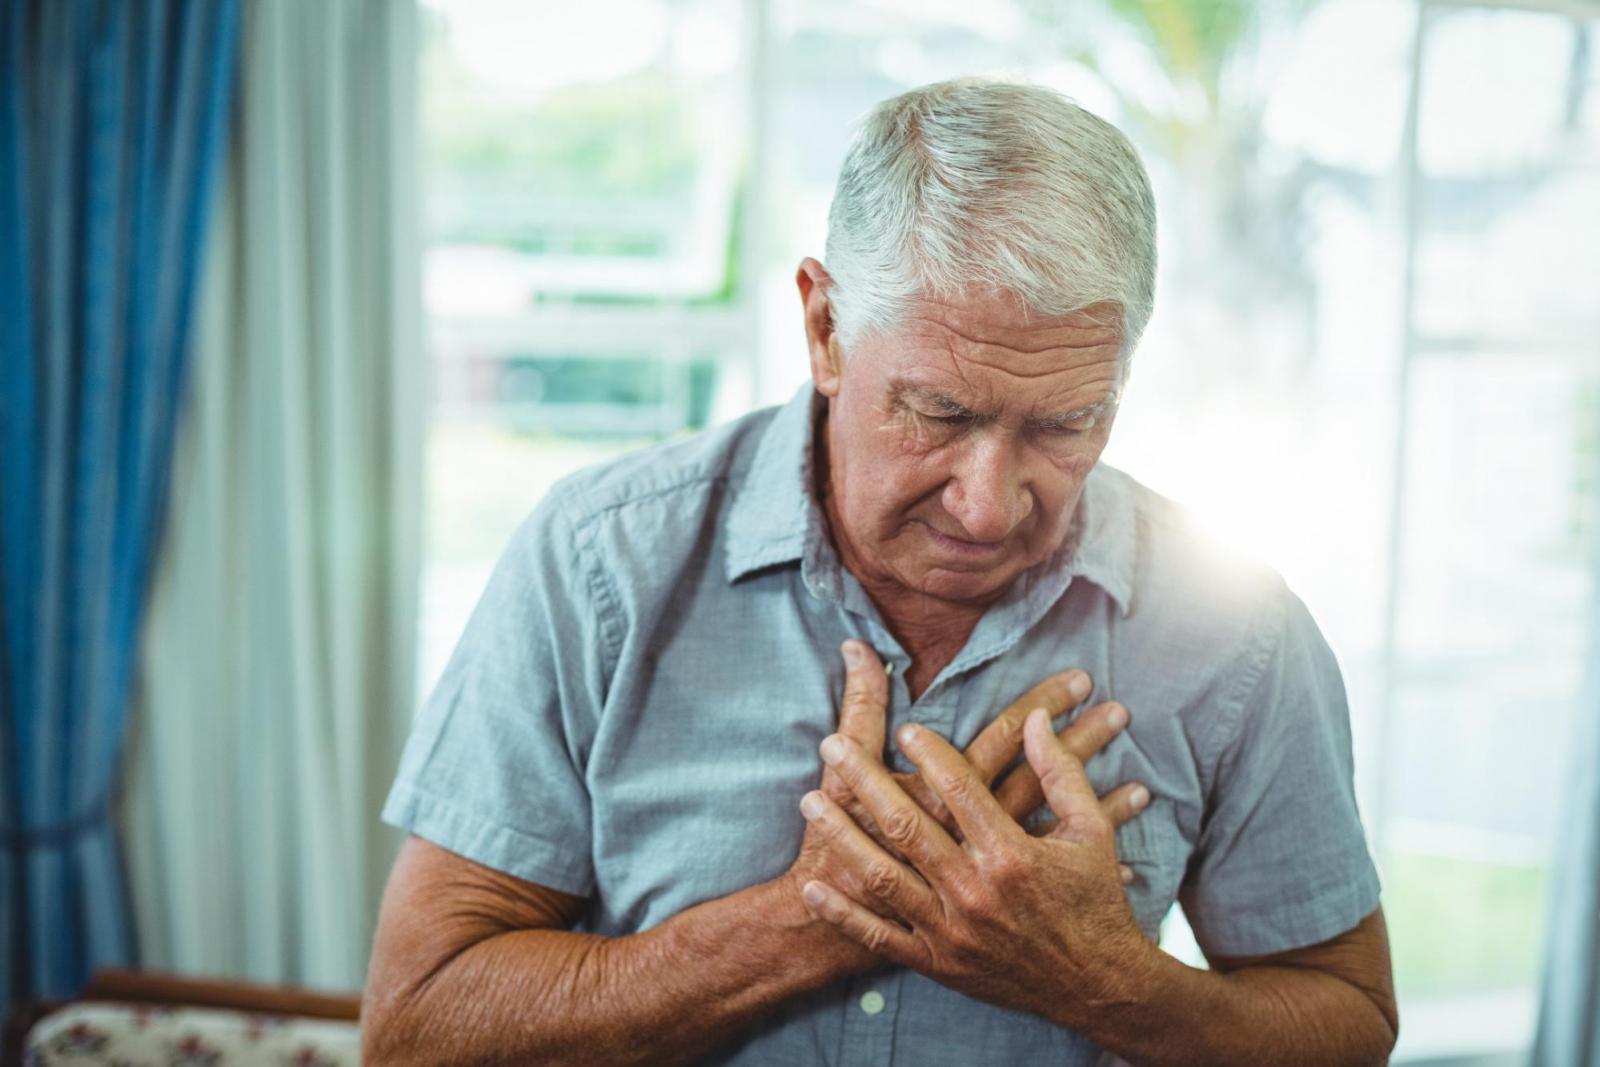 Suy tim - Biến chứng bệnh phổi tắc nghẽn mạn tính nguy hiểm